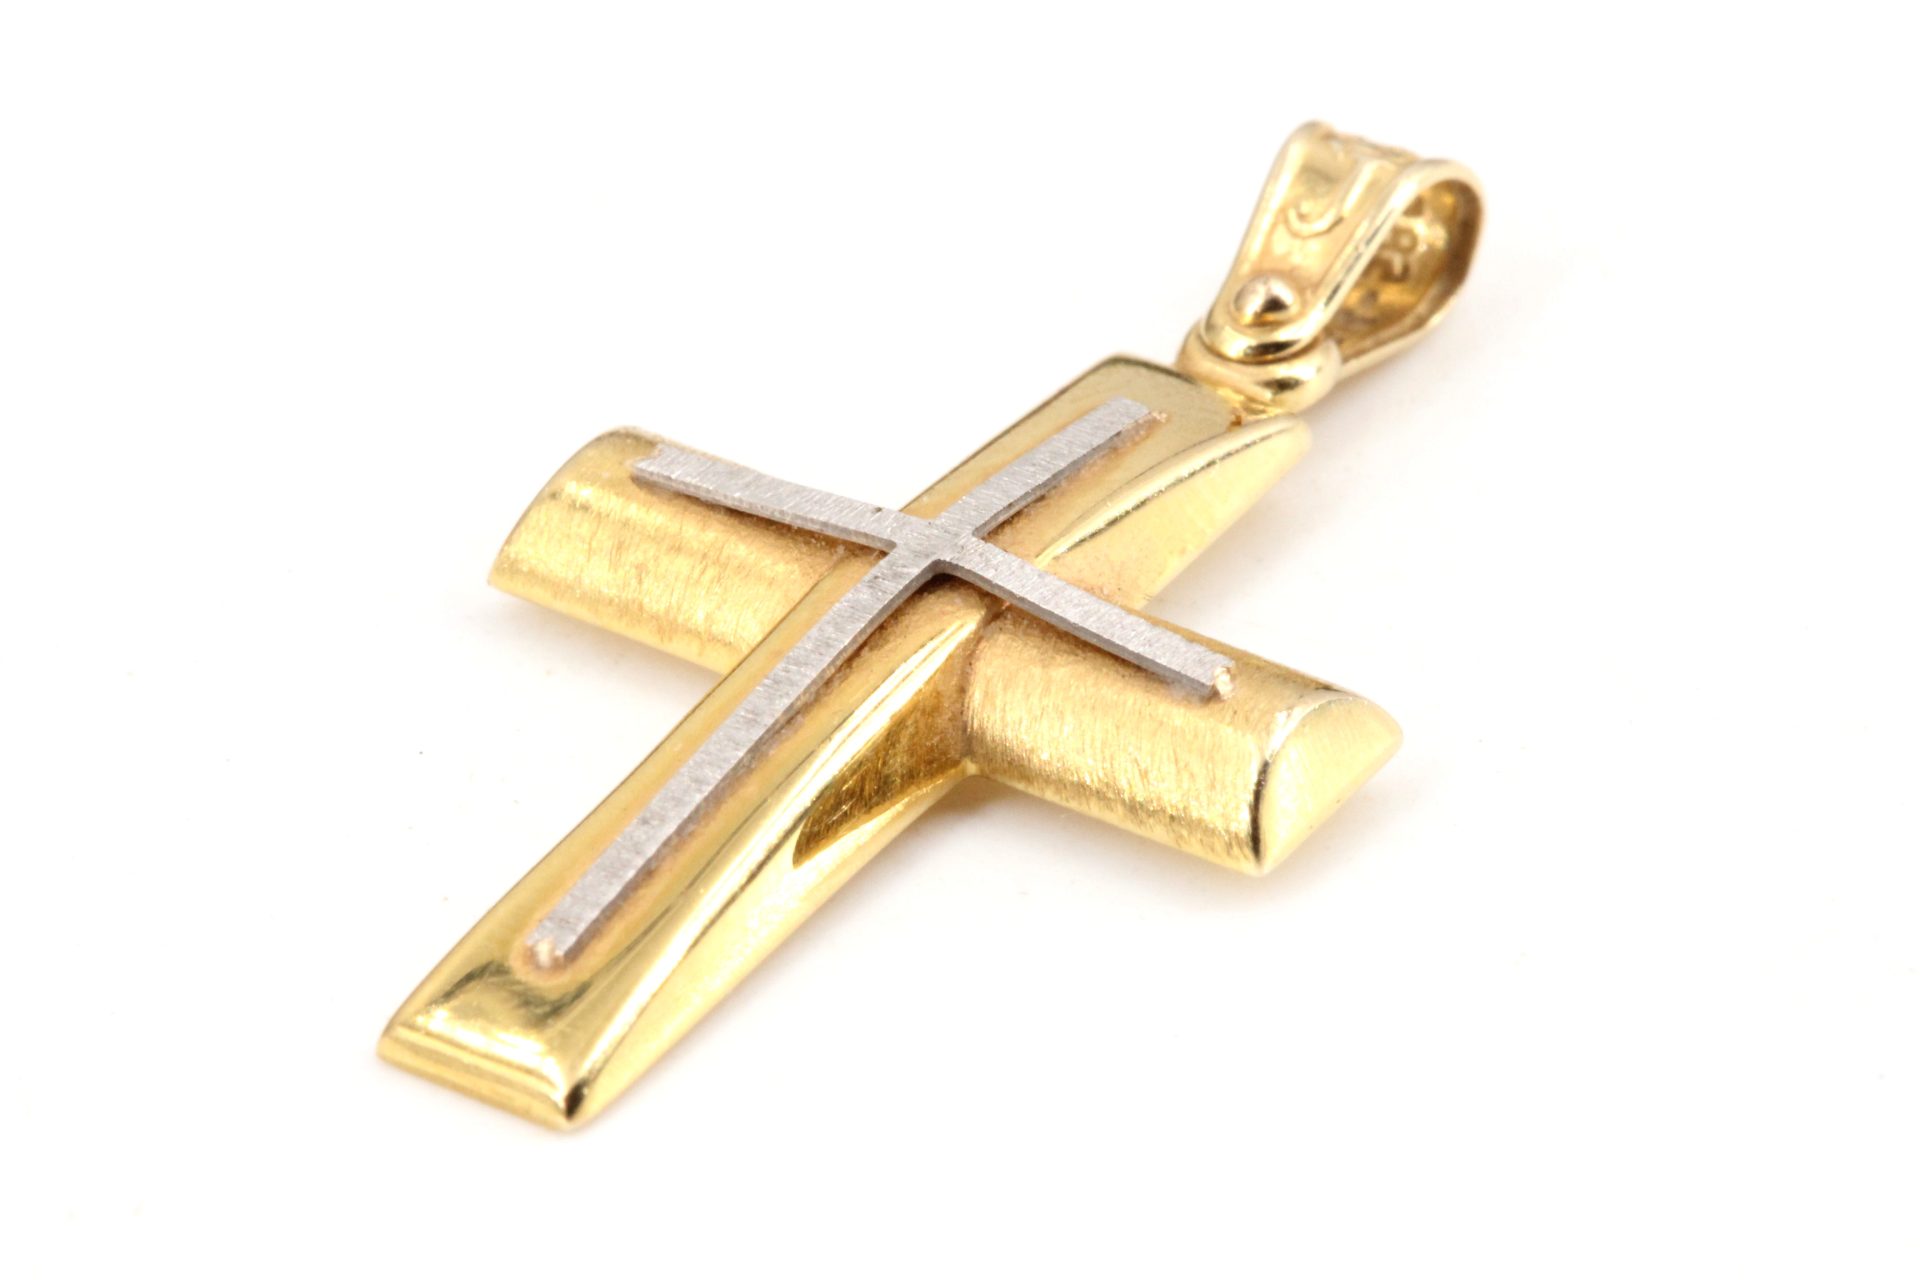 Verkauft beim Goldankauf Timmendorf: Kreuz aus Gelbgold mit kleinerem Kreuz aus Weißgold.